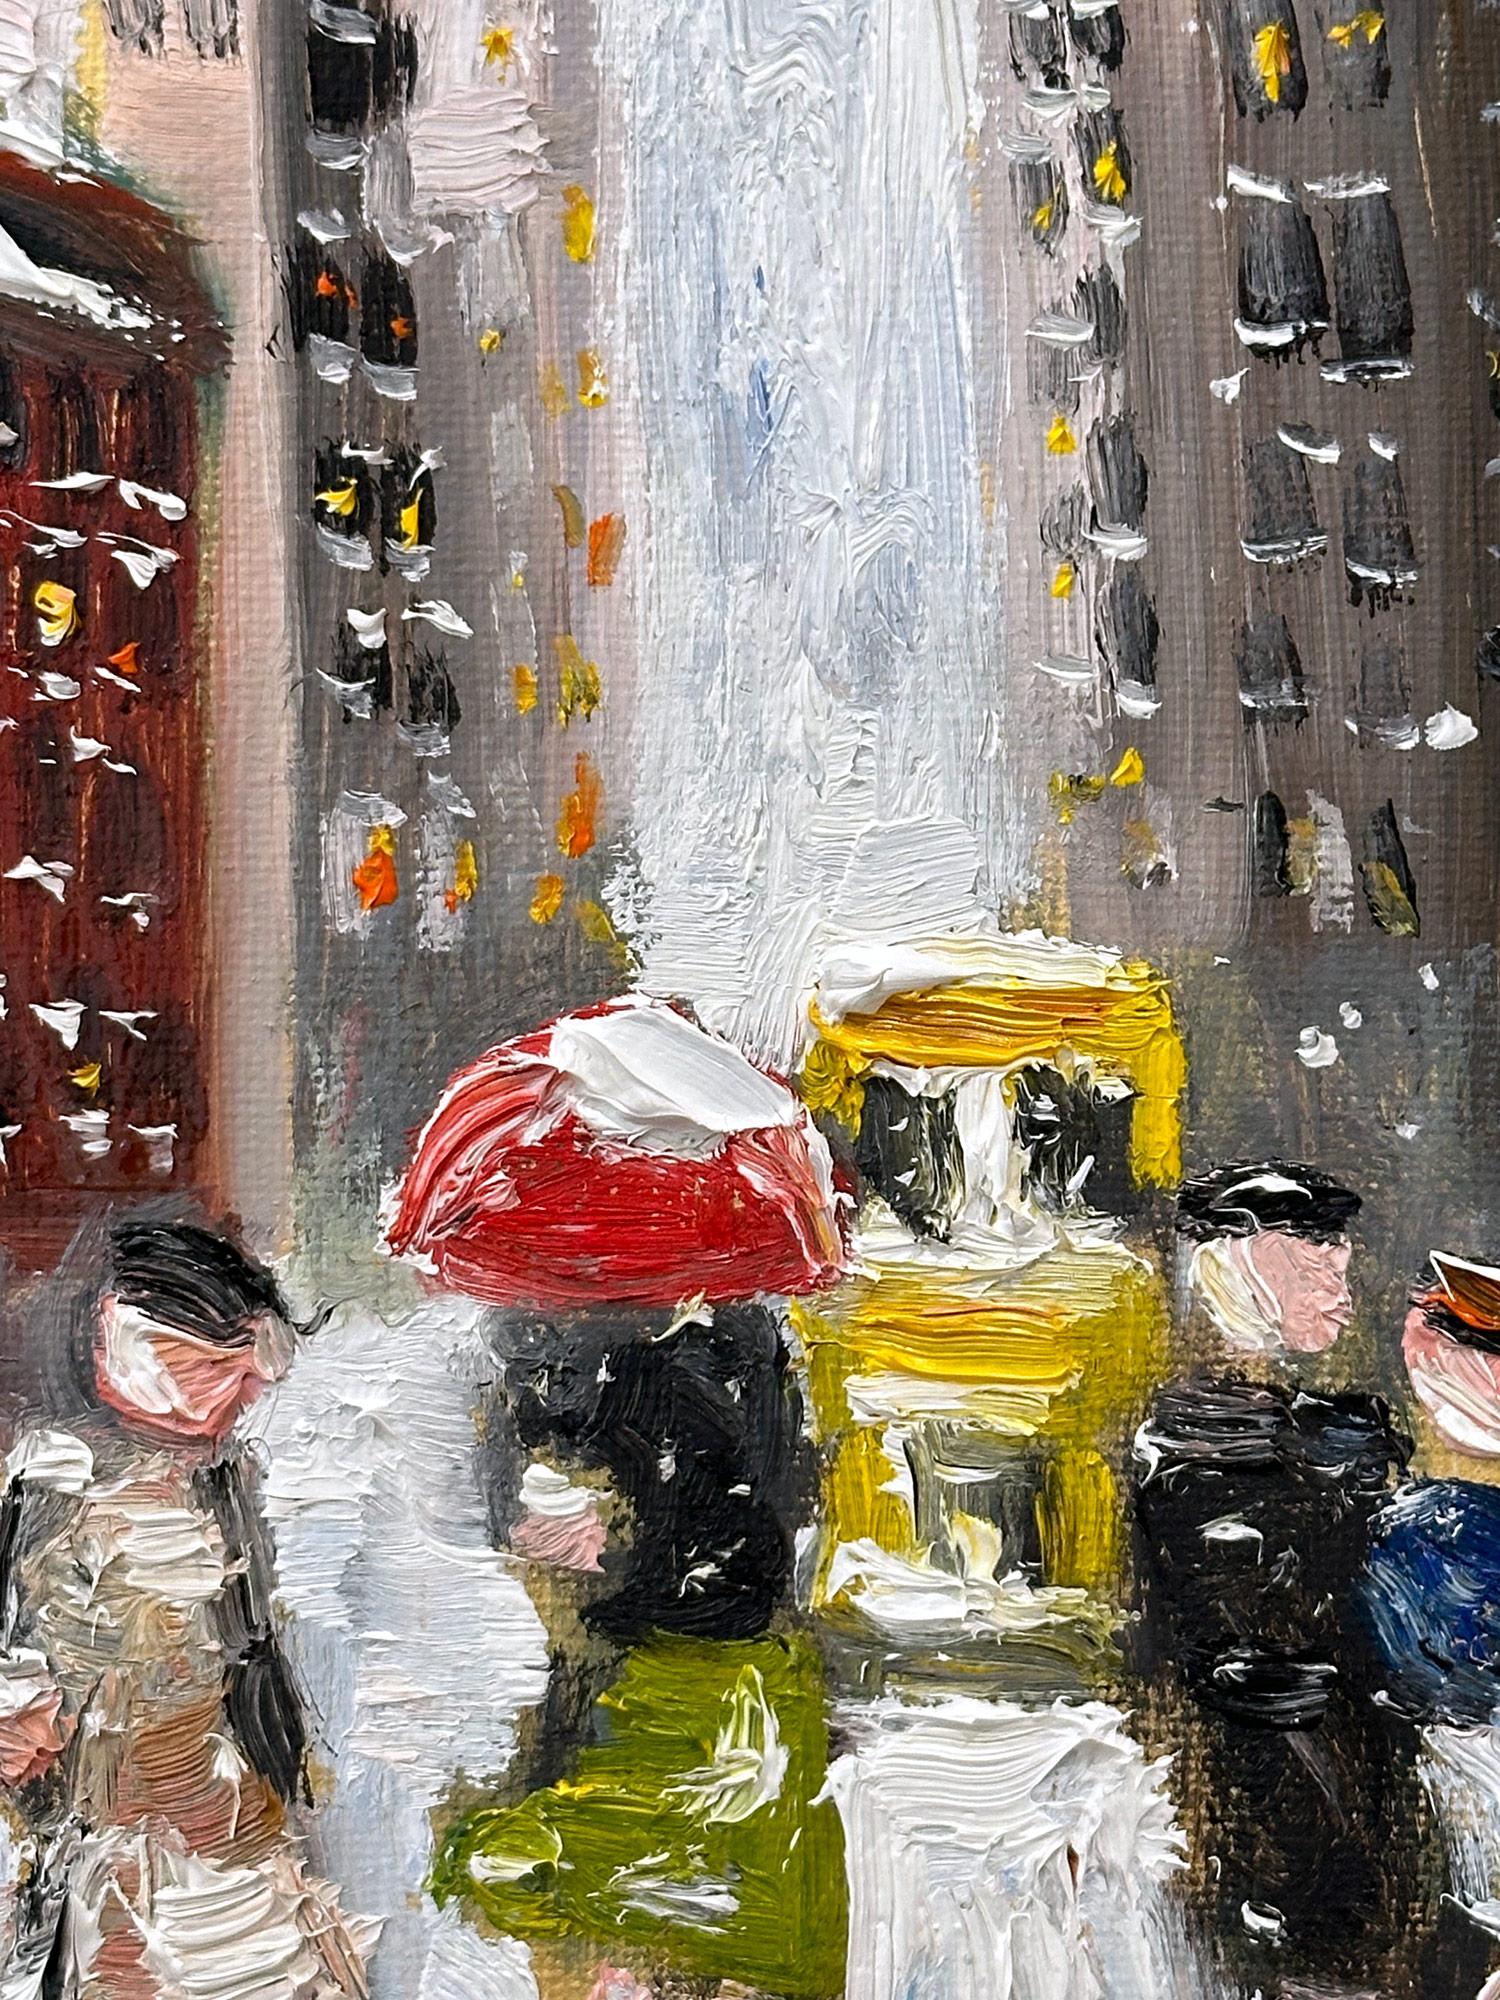 „Snow on Fifth Ave“ NYC Impressionistisches Ölgemälde im Stil von Guy Wiggins, NYC  (Amerikanischer Impressionismus), Painting, von Cindy Shaoul